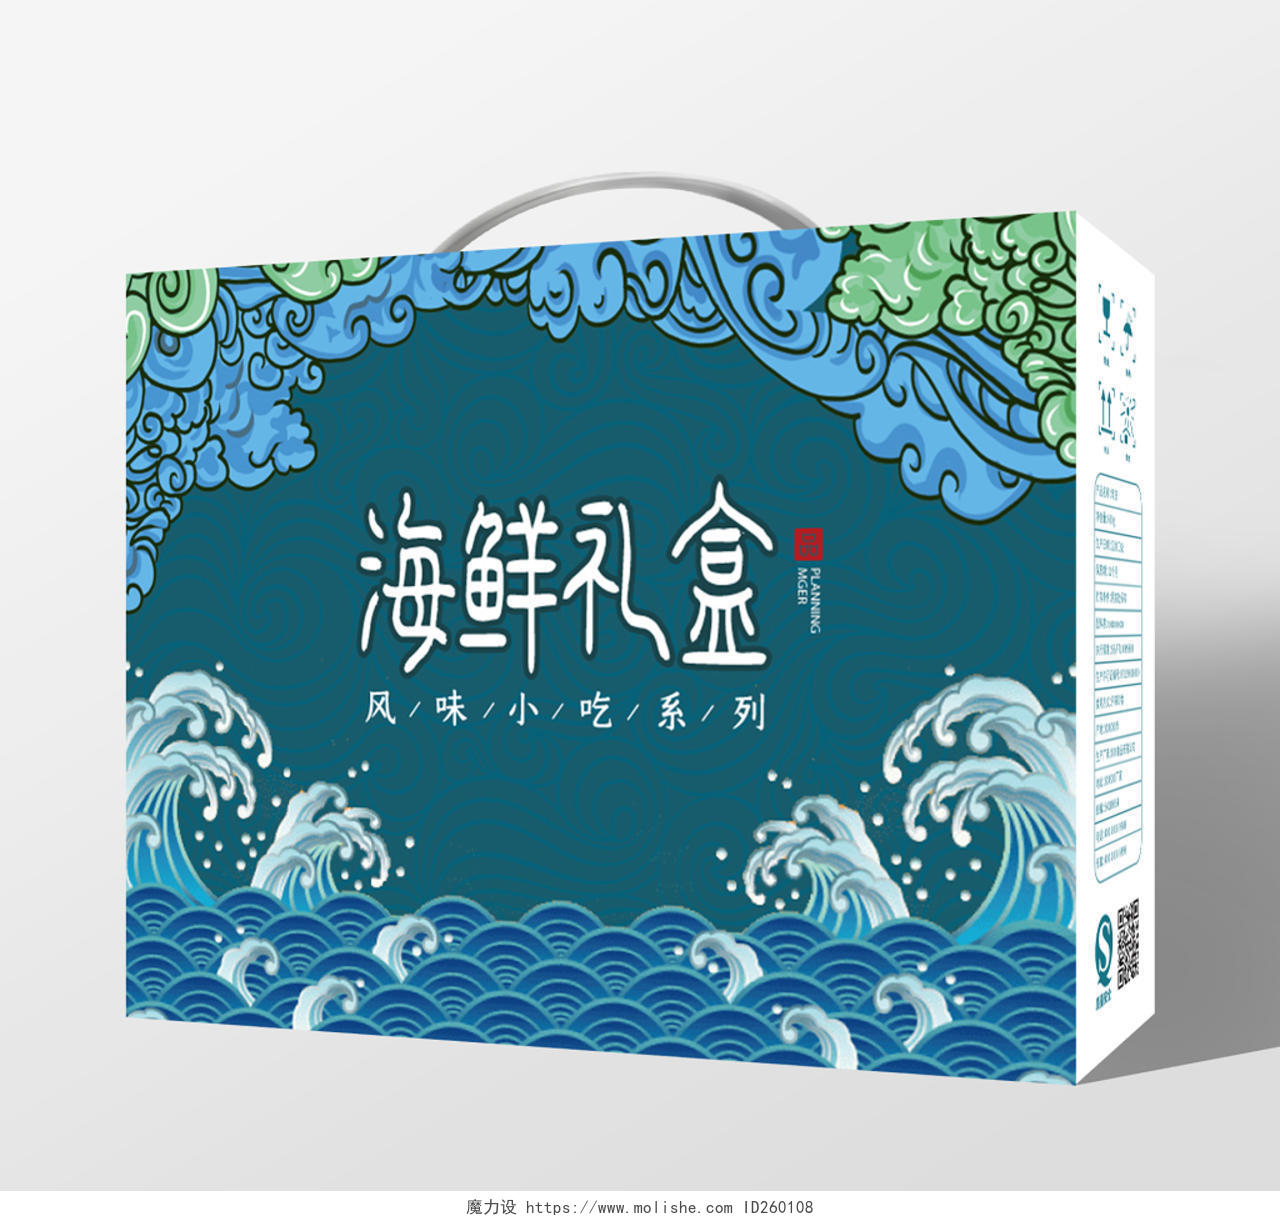 春节礼盒蓝色海浪几何卡通简约海鲜礼盒2020鼠年年货包装